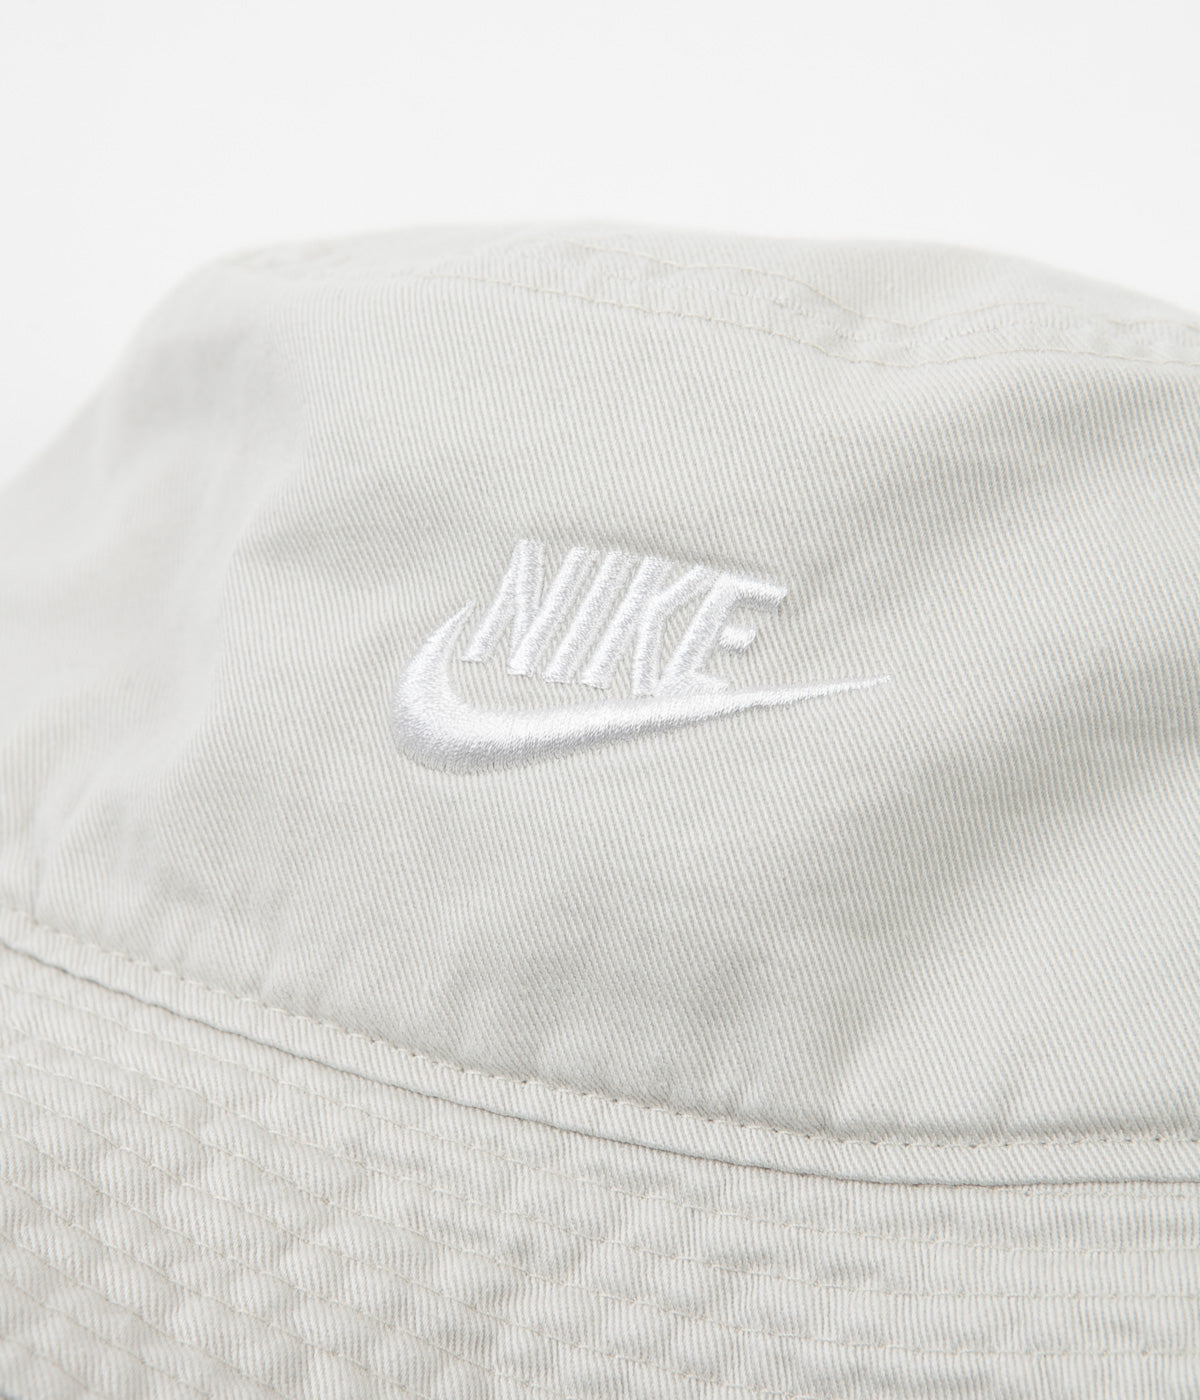 Nike Sportswear Bucket Hat - White